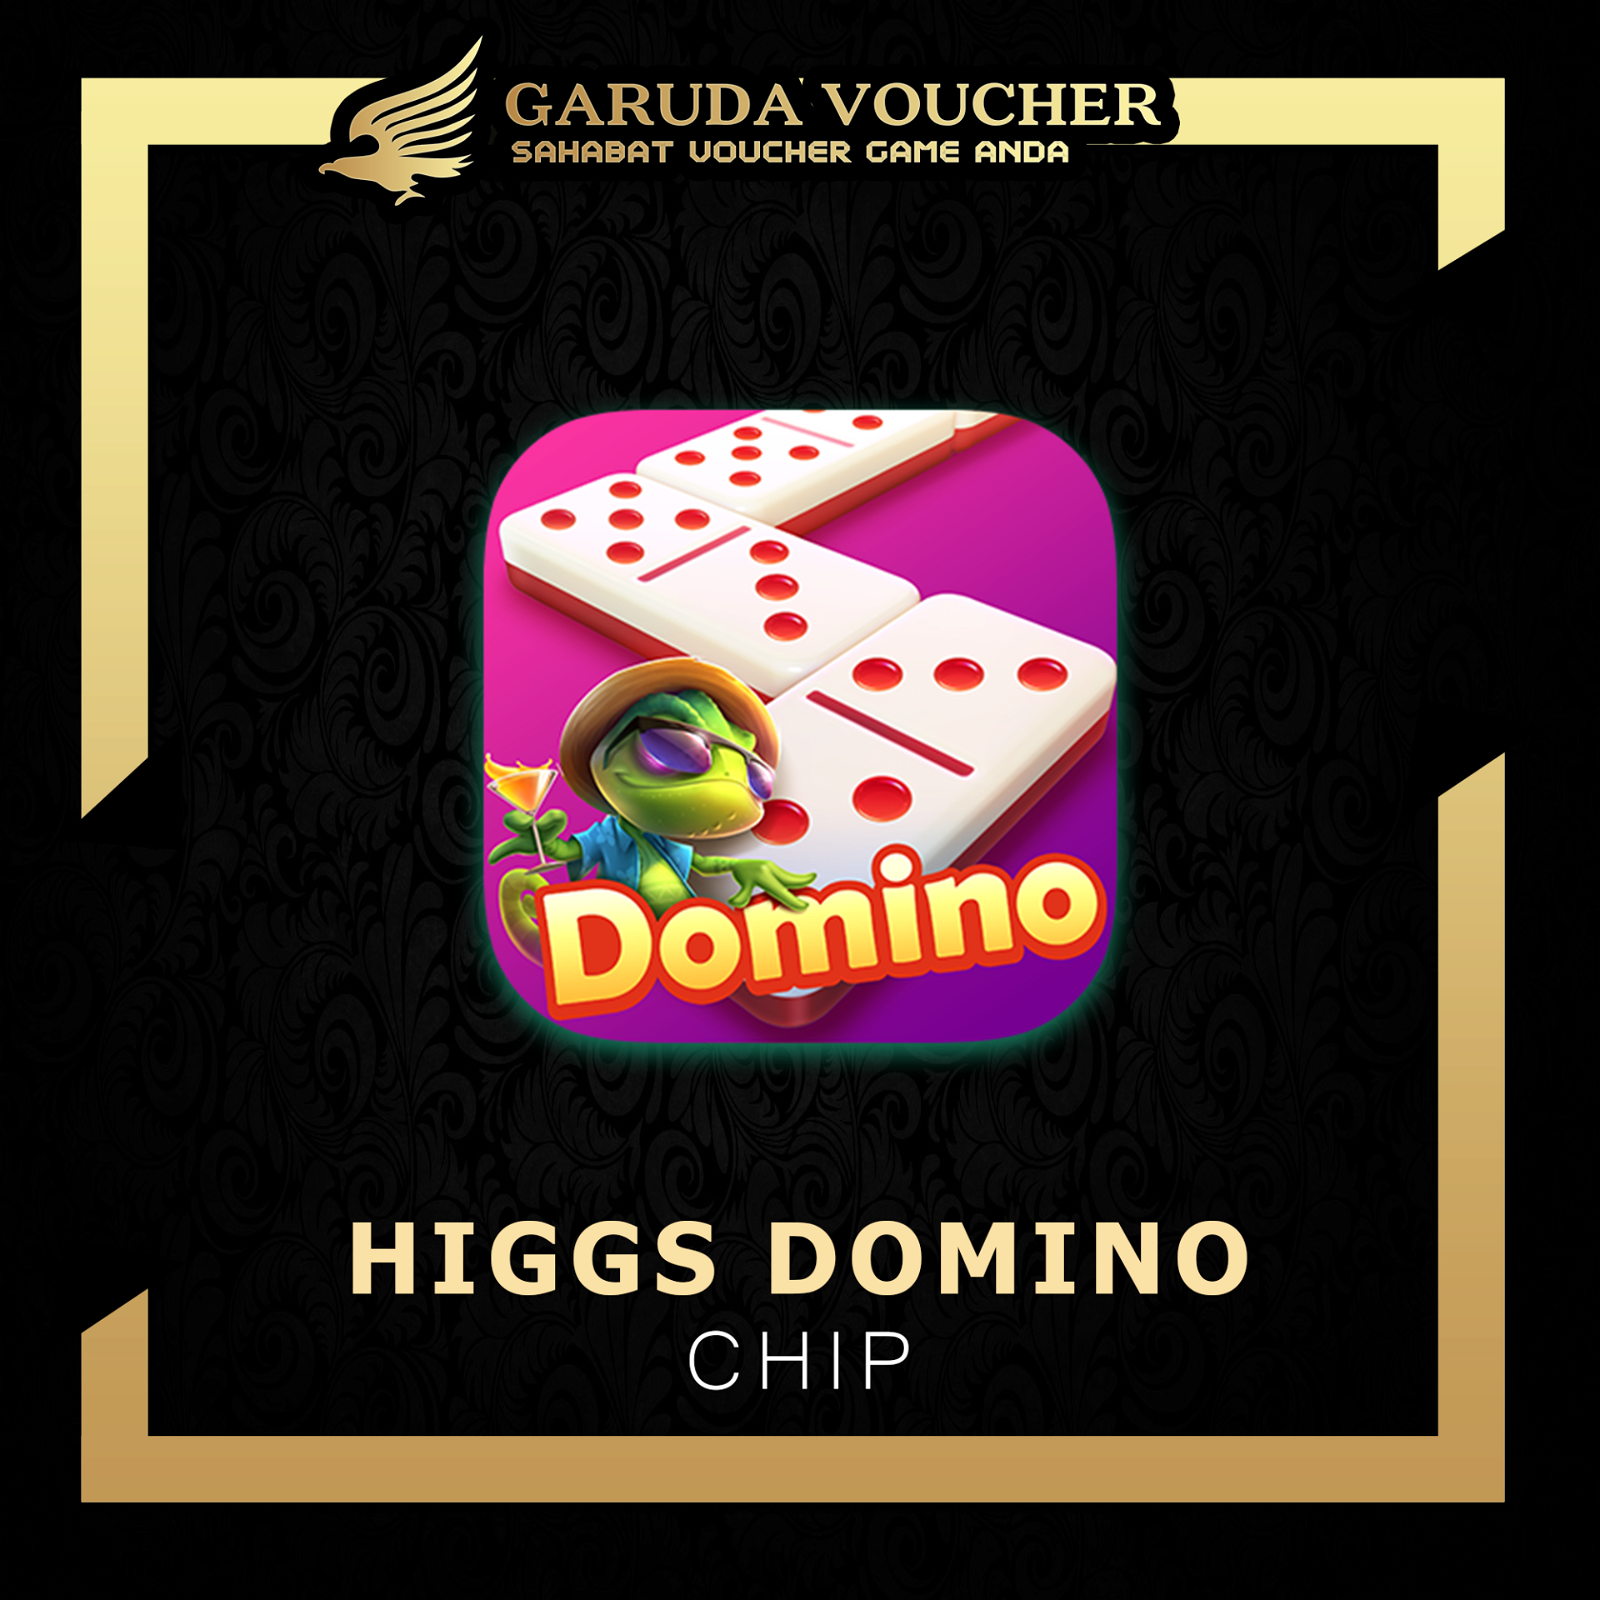 Topup Higgs Domino Garuda Voucher.